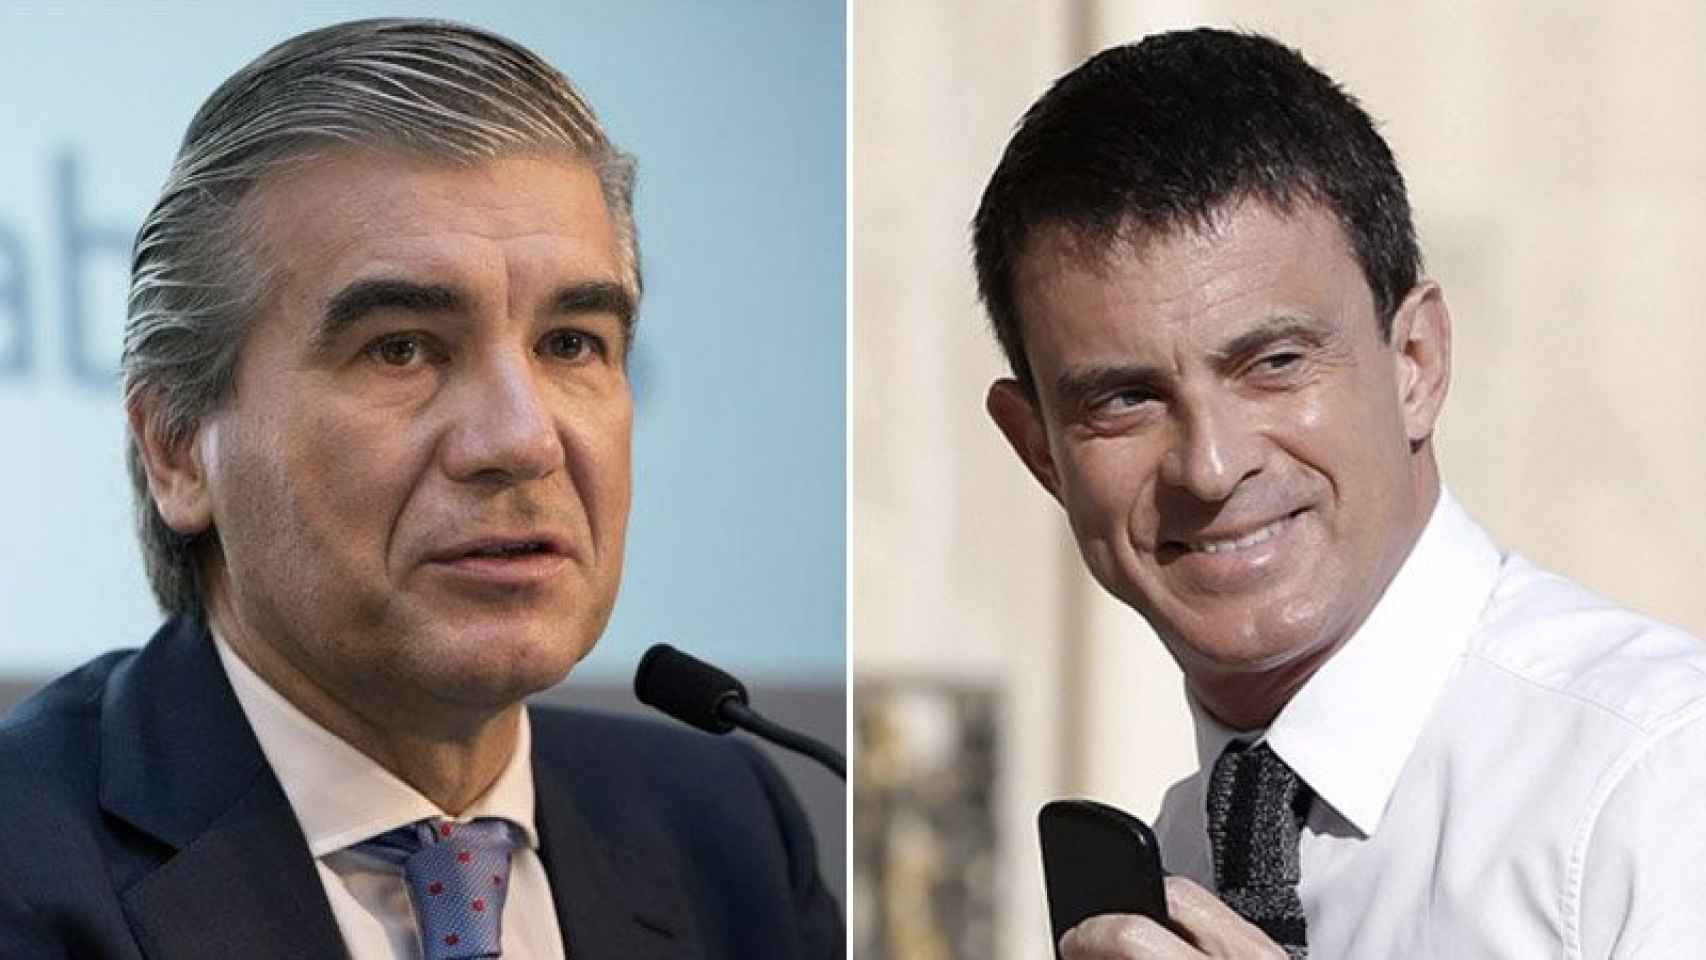 El vicepresidente de Abertis, Francisco Reynés (izquierda), y el jefe del Ejecutivo francés, Manuel Valls (derecha)